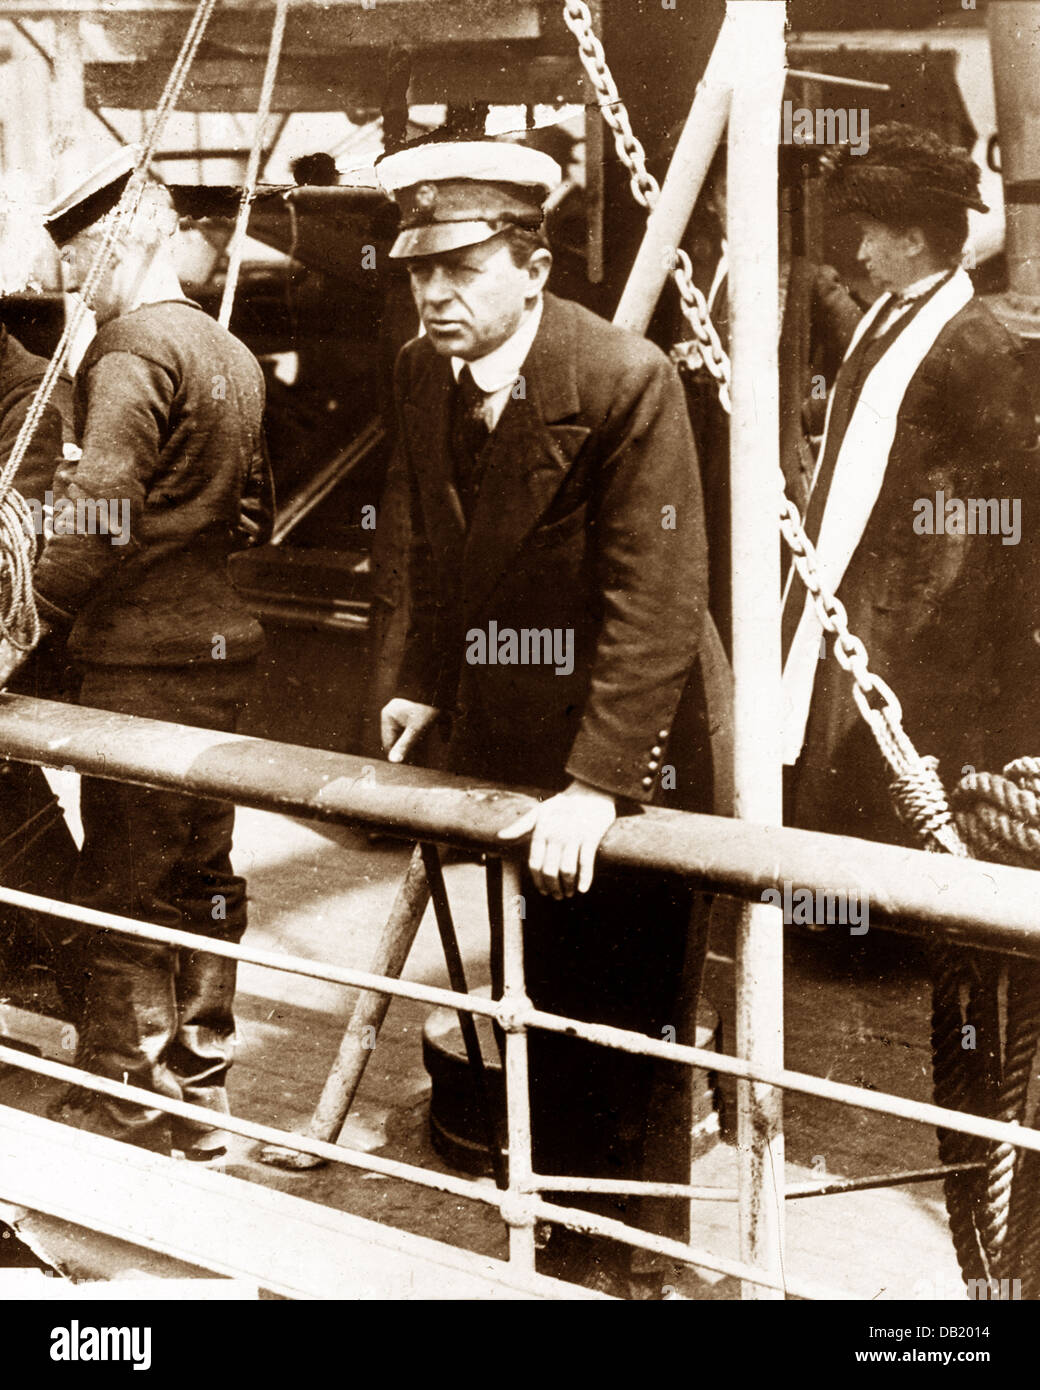 L'expédition de Scott, le Capitaine Scott sur le Terra Nova en 1910 Banque D'Images